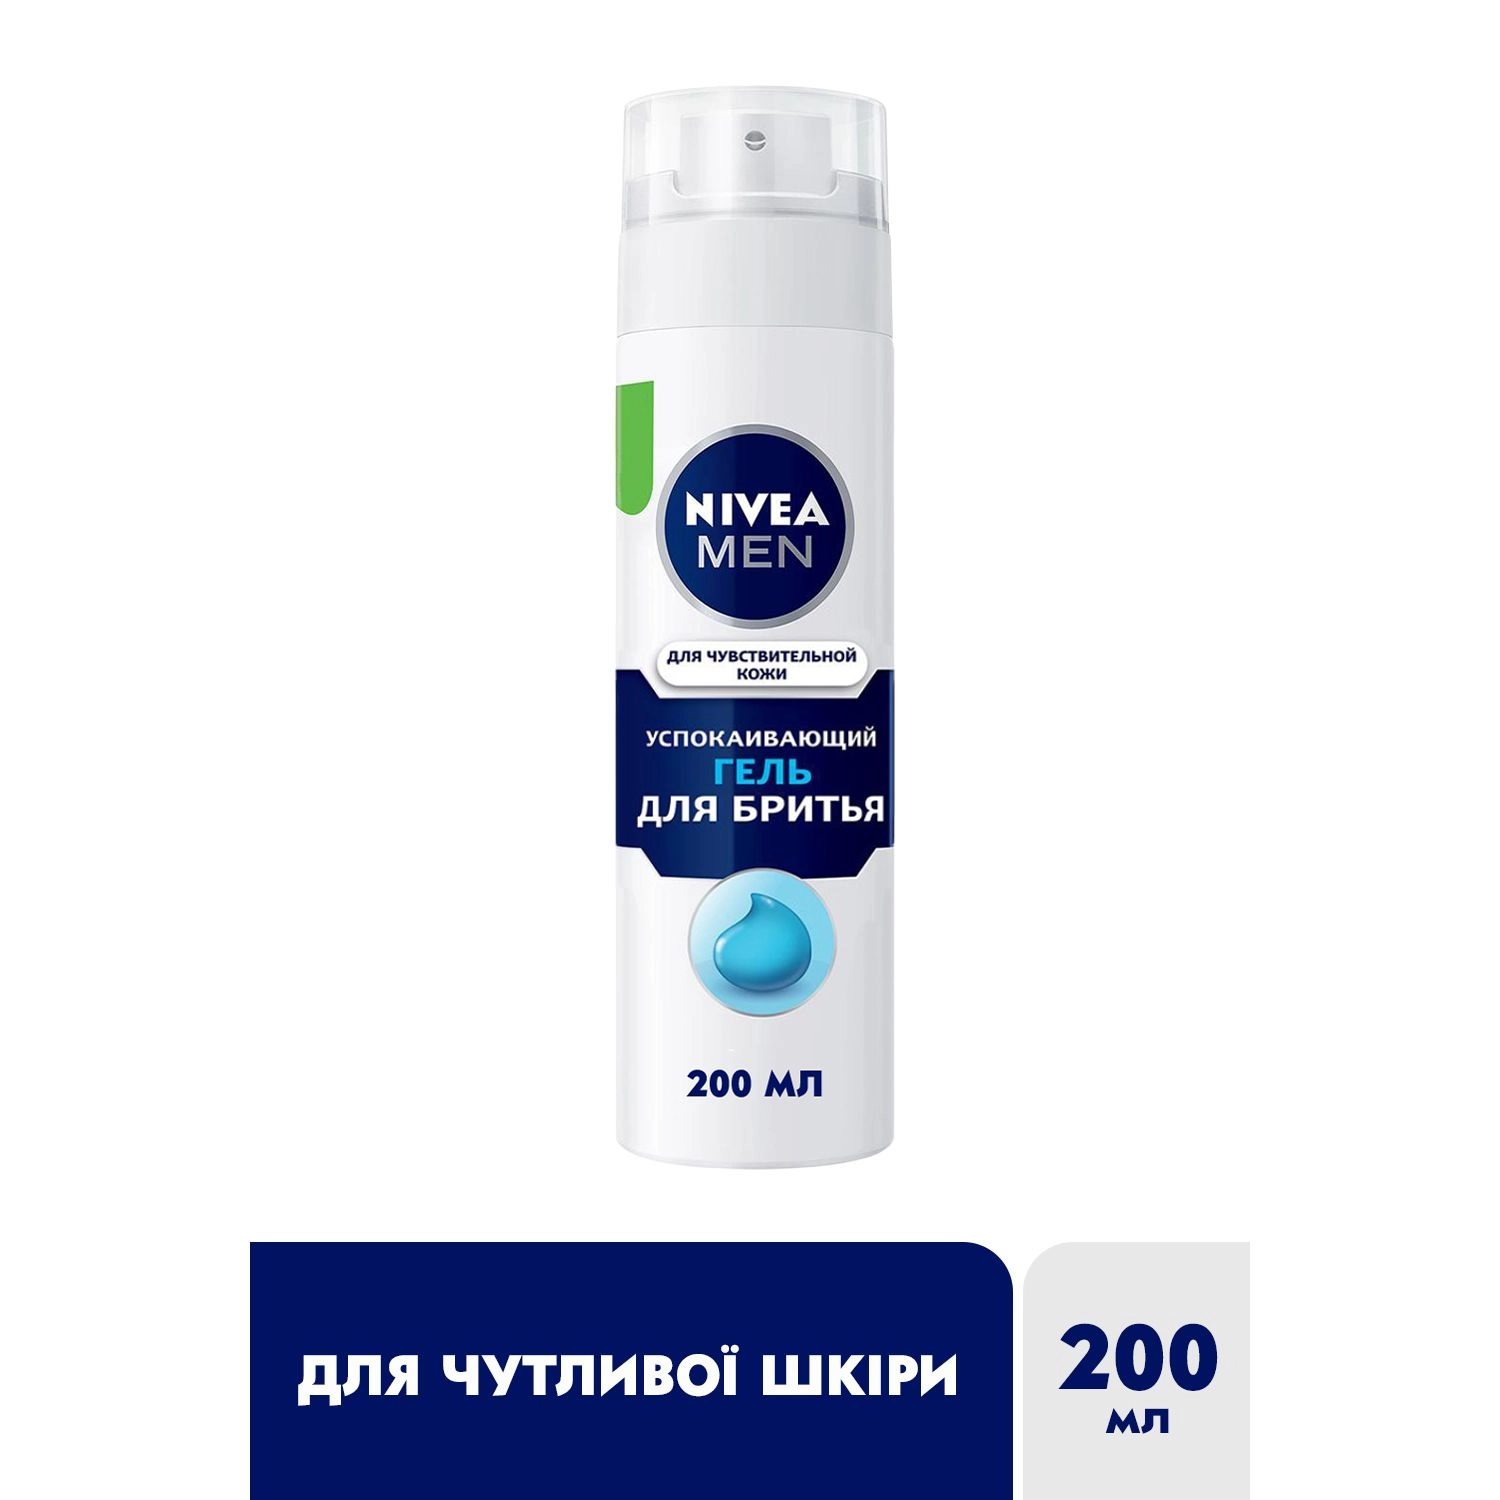 Nivea Men Гель для бритья успокаивающий, для чувствительной кожи NIVEA не содержит спирт, 200 мл - фото N2